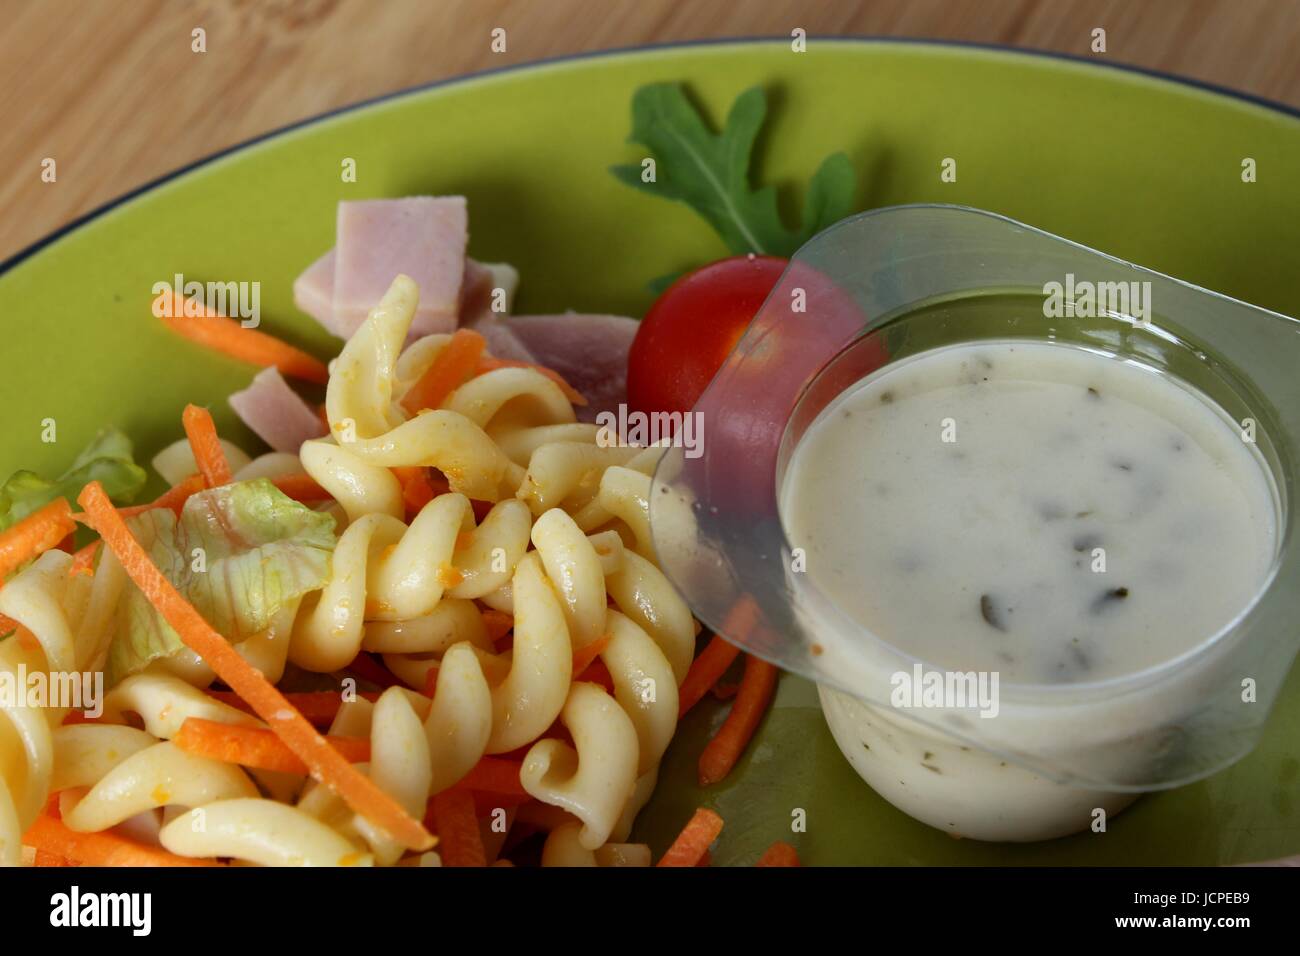 Une salade de pâtes accompagné d'une tomate et un pot de sauce dans une assiette Banque D'Images